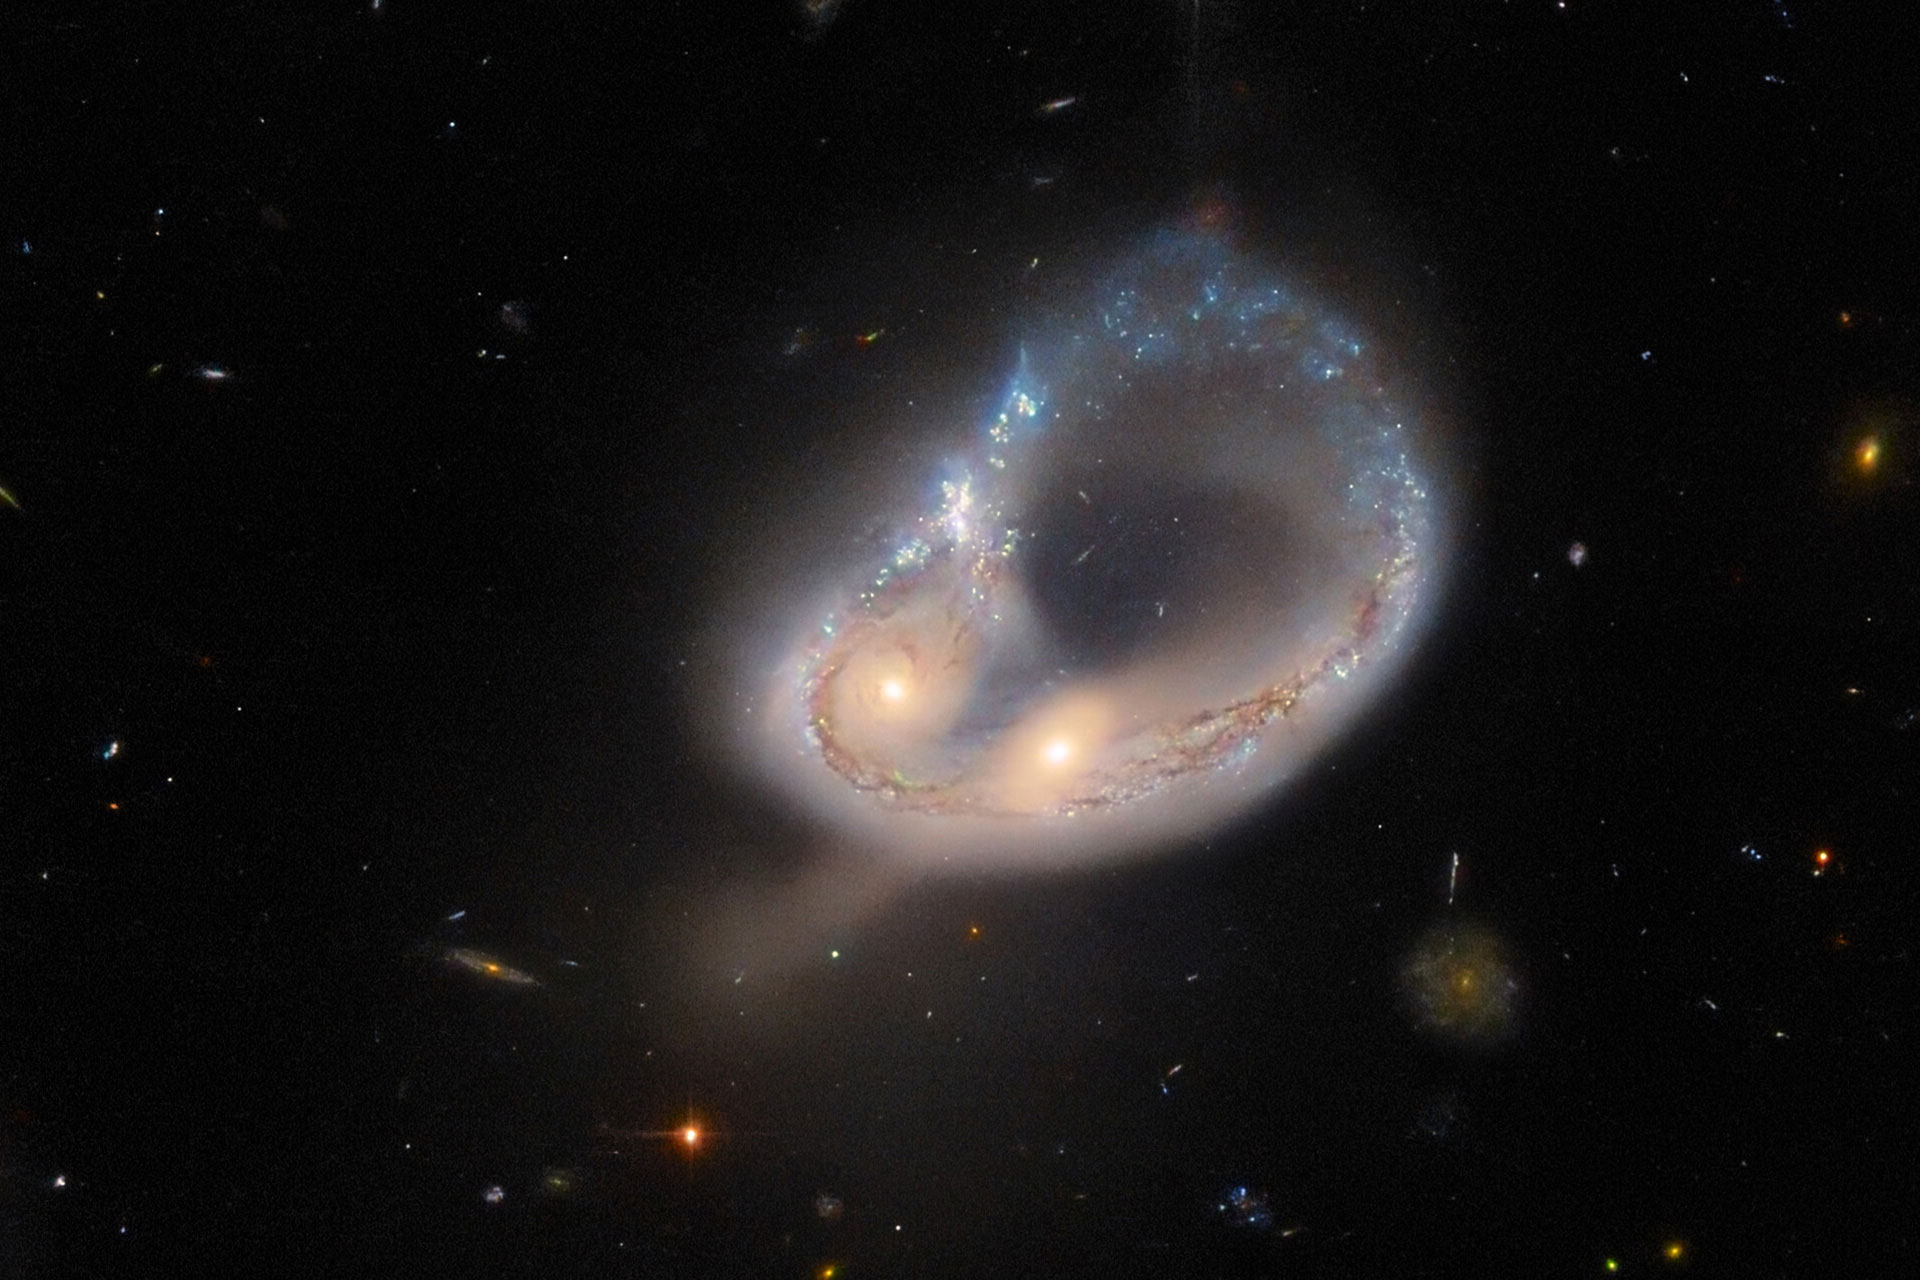 colliding galaxies 63c5153bec192cab95aad579